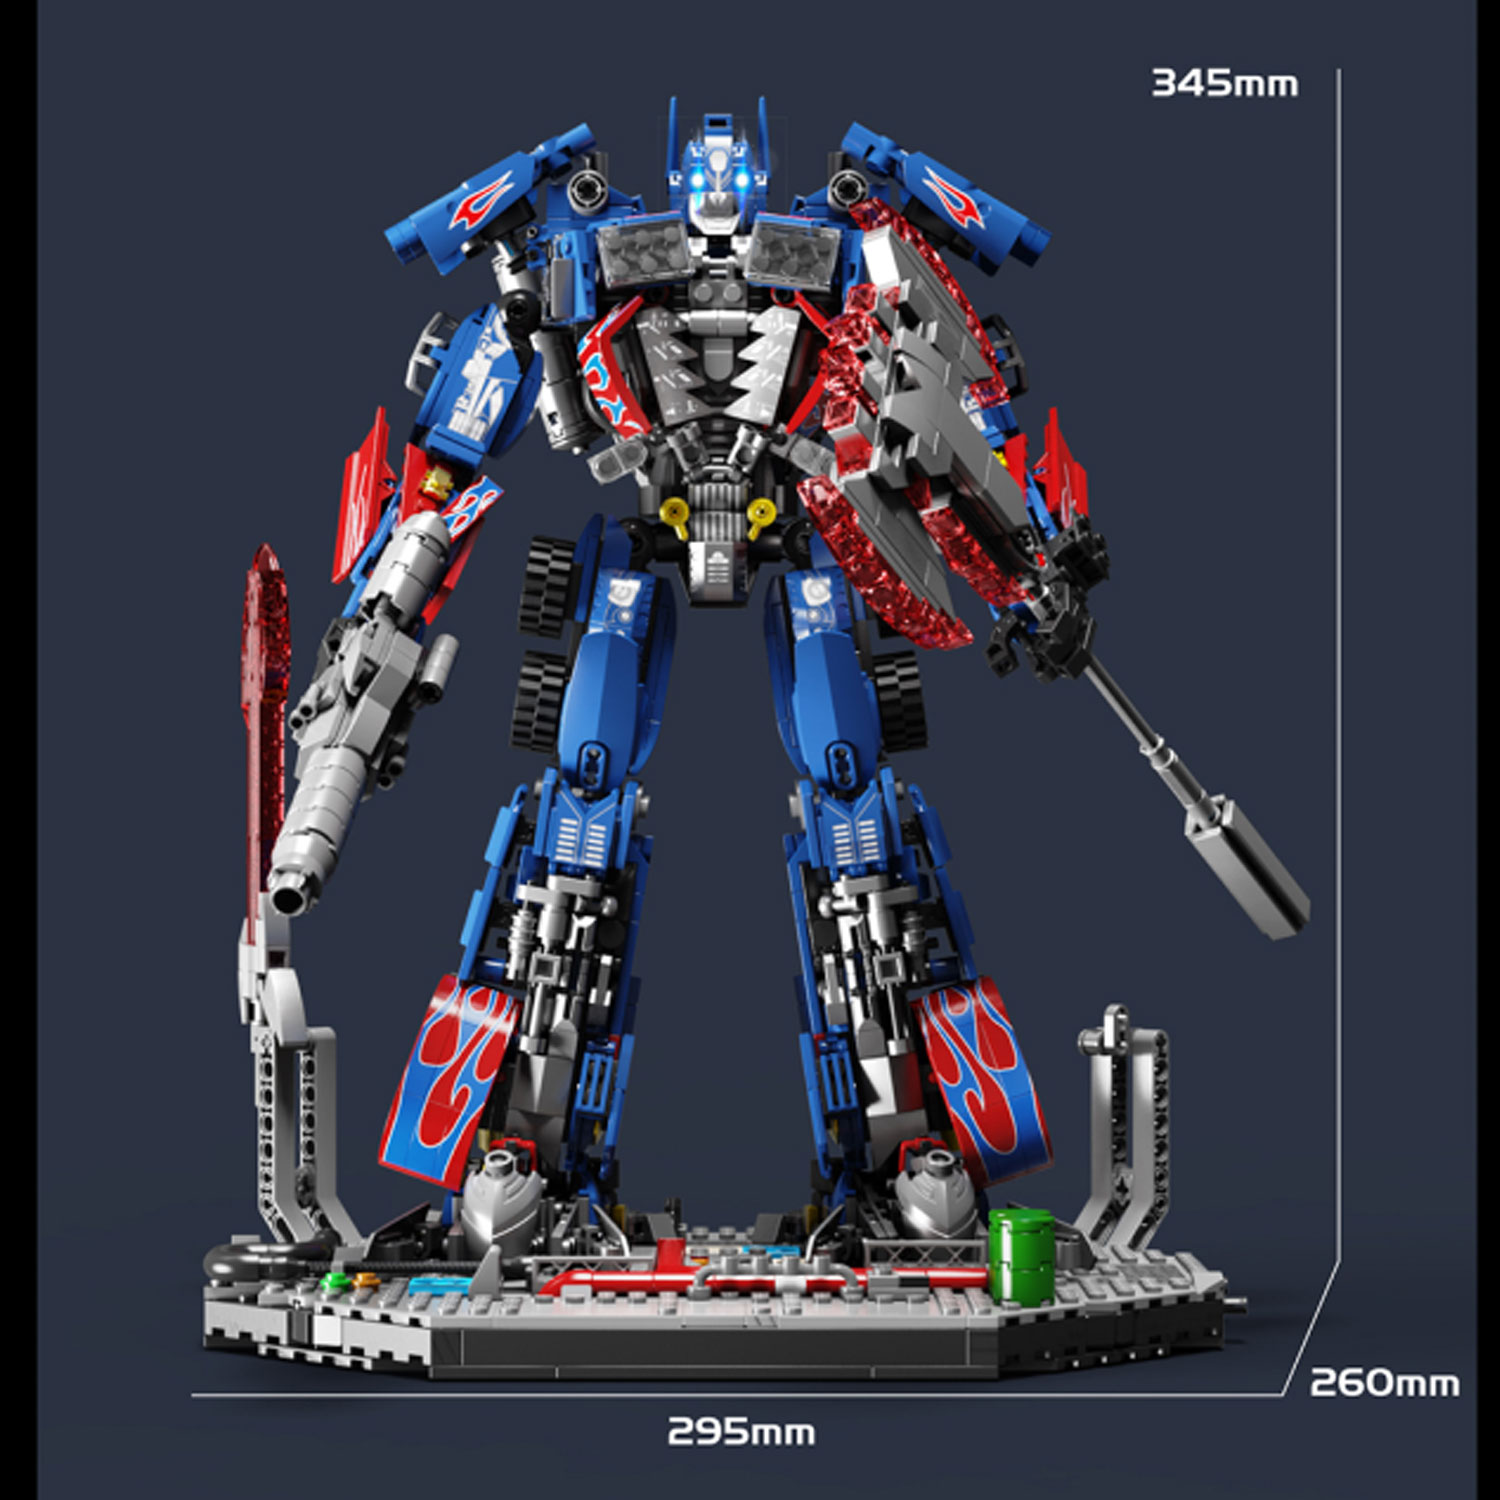 Tuole 6006 Transformers Optimus Prime 1